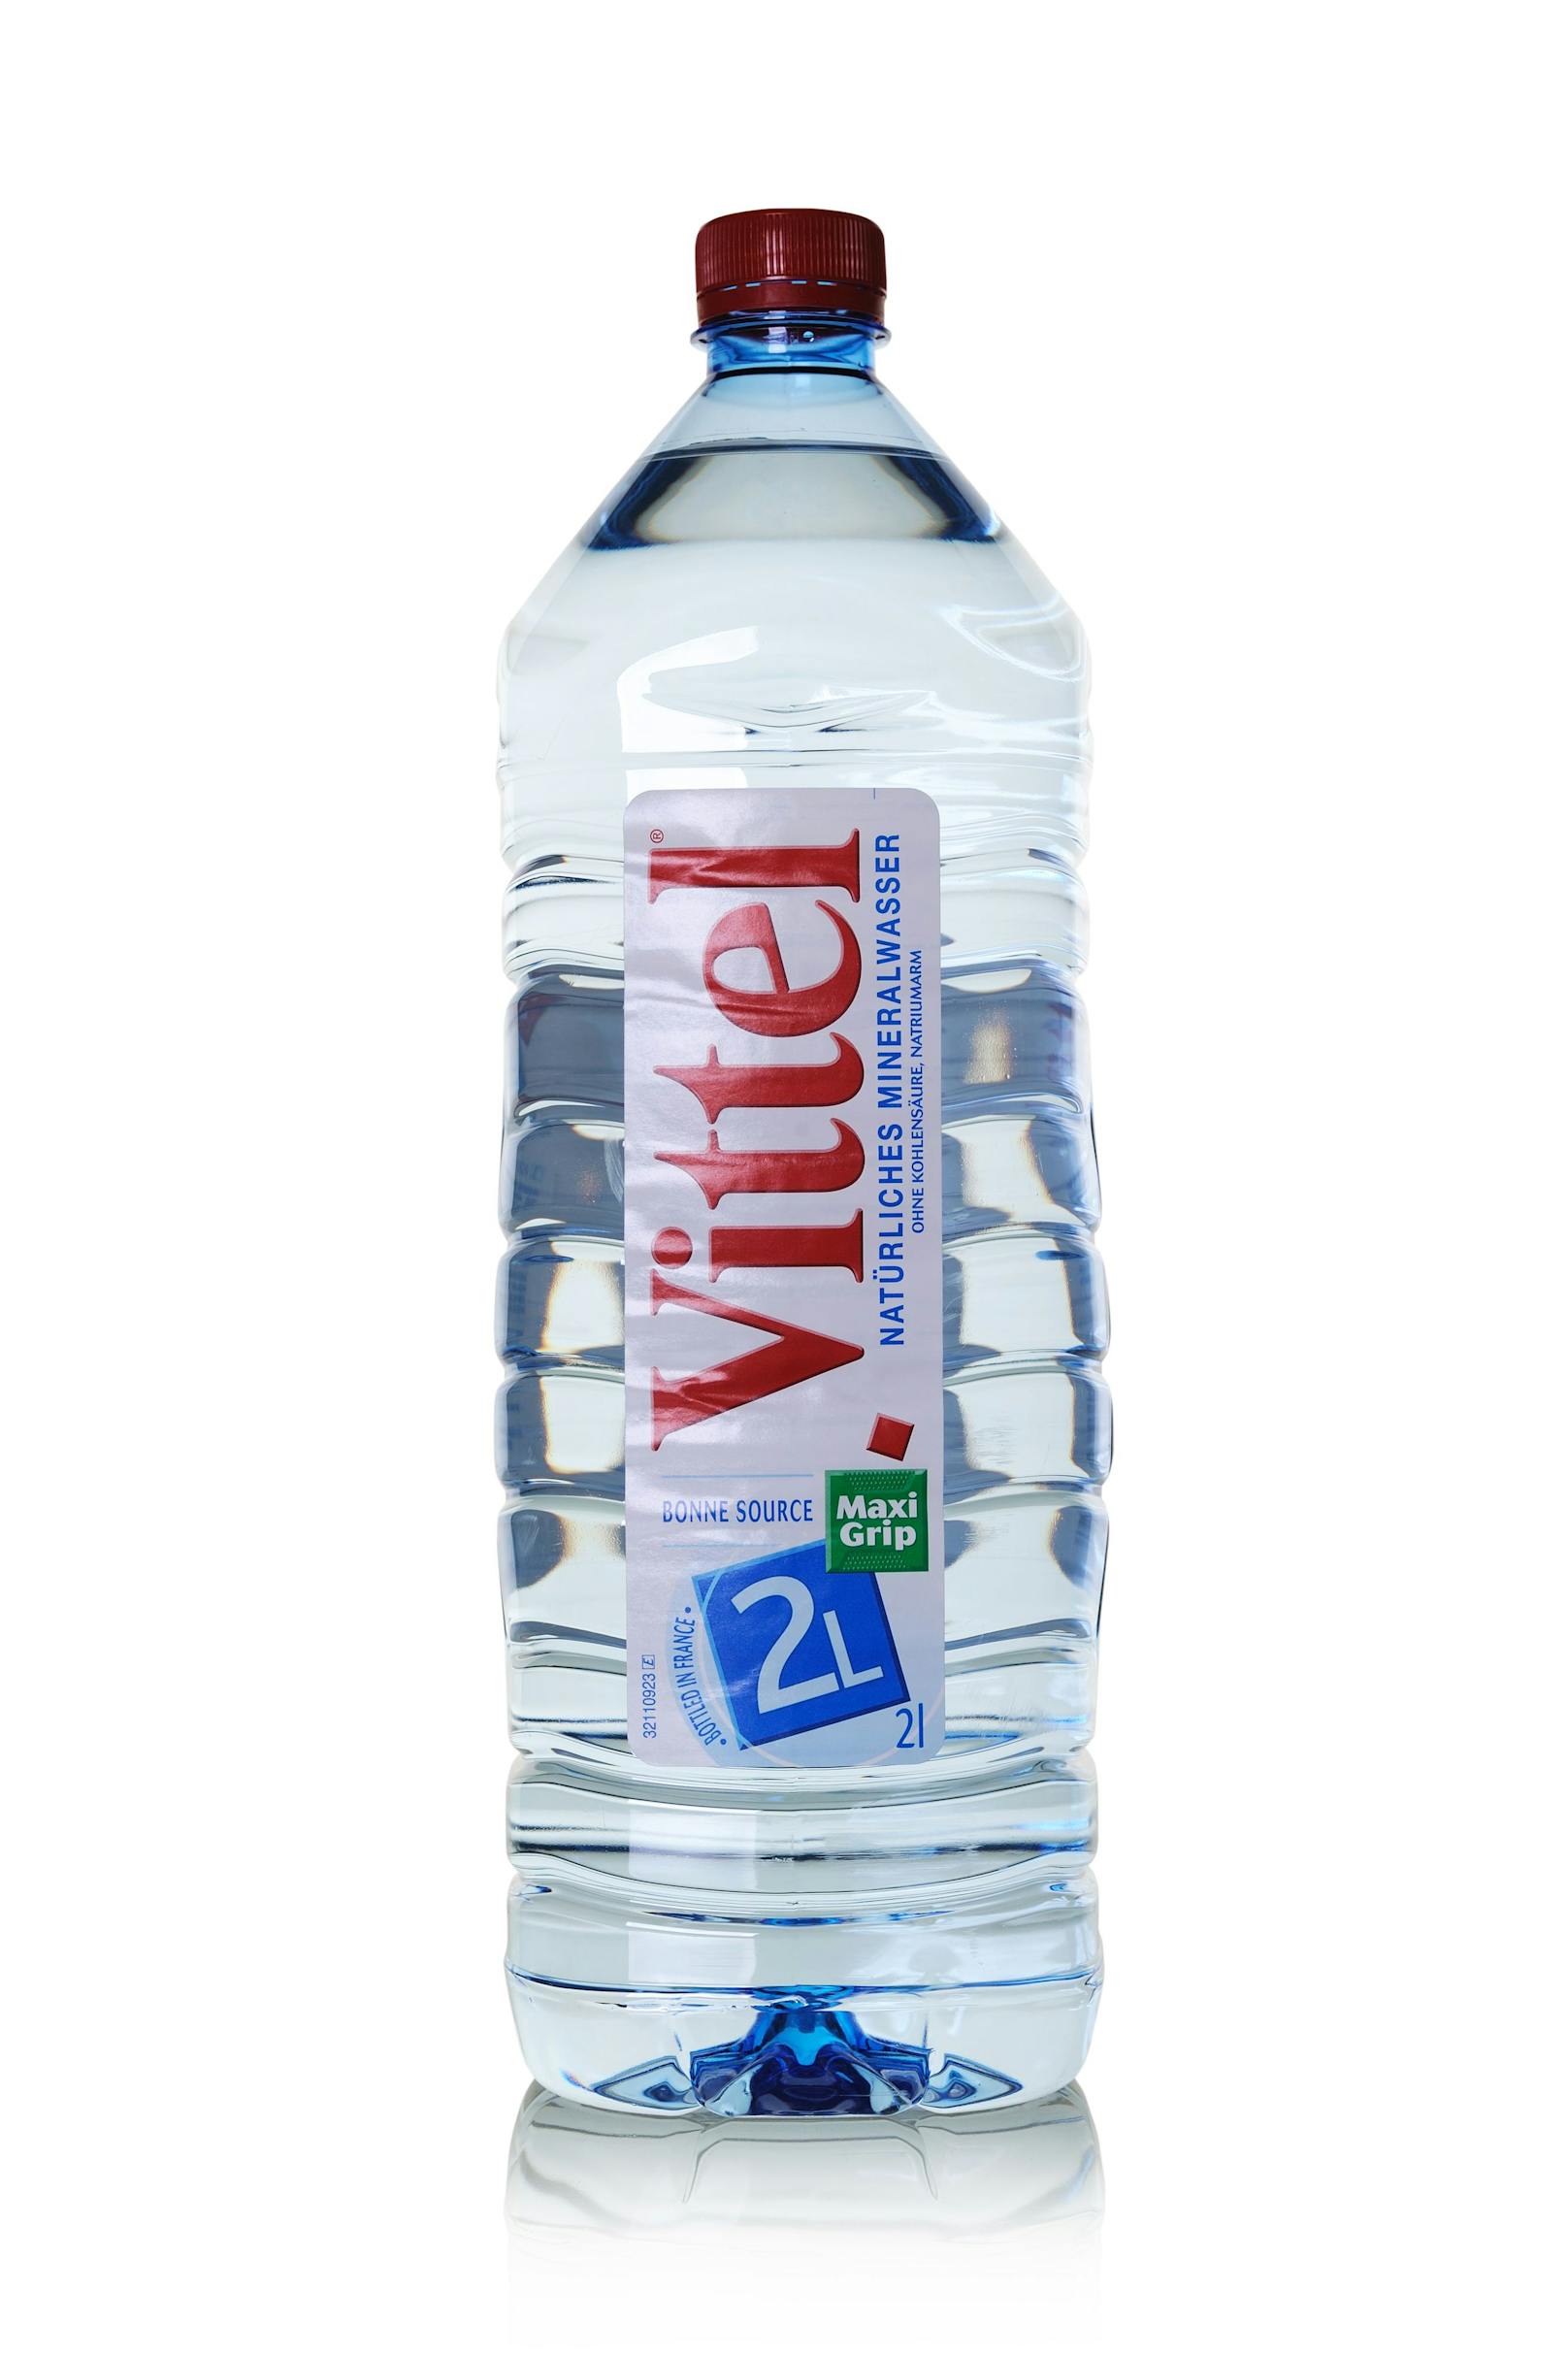 Eine 2 Liter Mineralwasserflasche von Vittel.&nbsp;